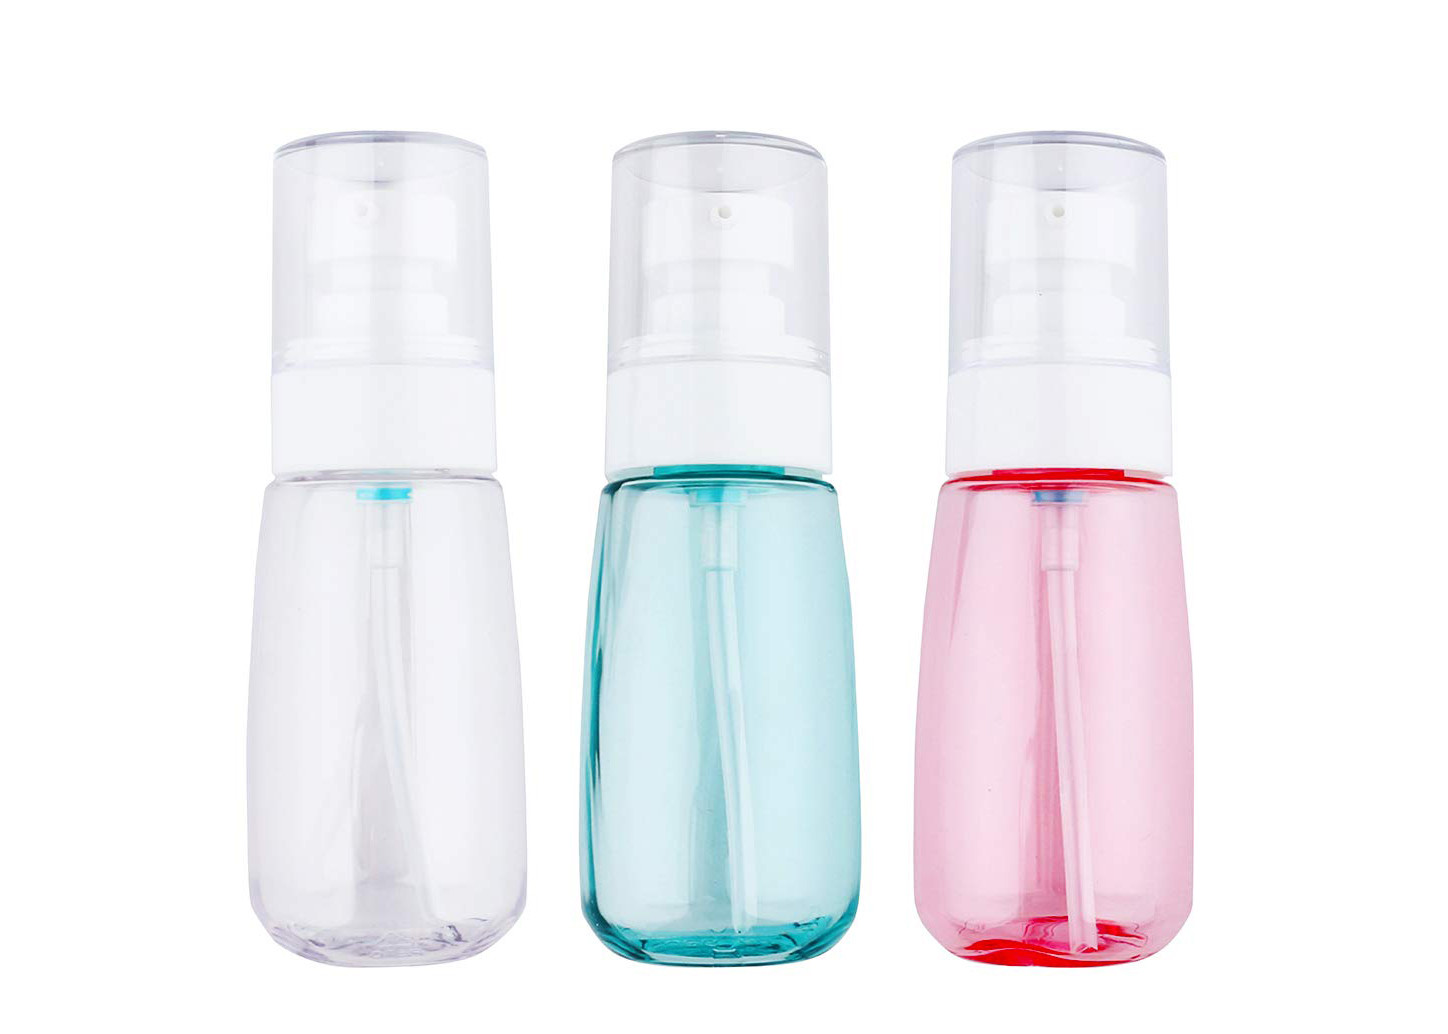 Les bouteilles en plastique cosmétiques roses bleues ont adapté la capacité et les couleurs aux besoins du client